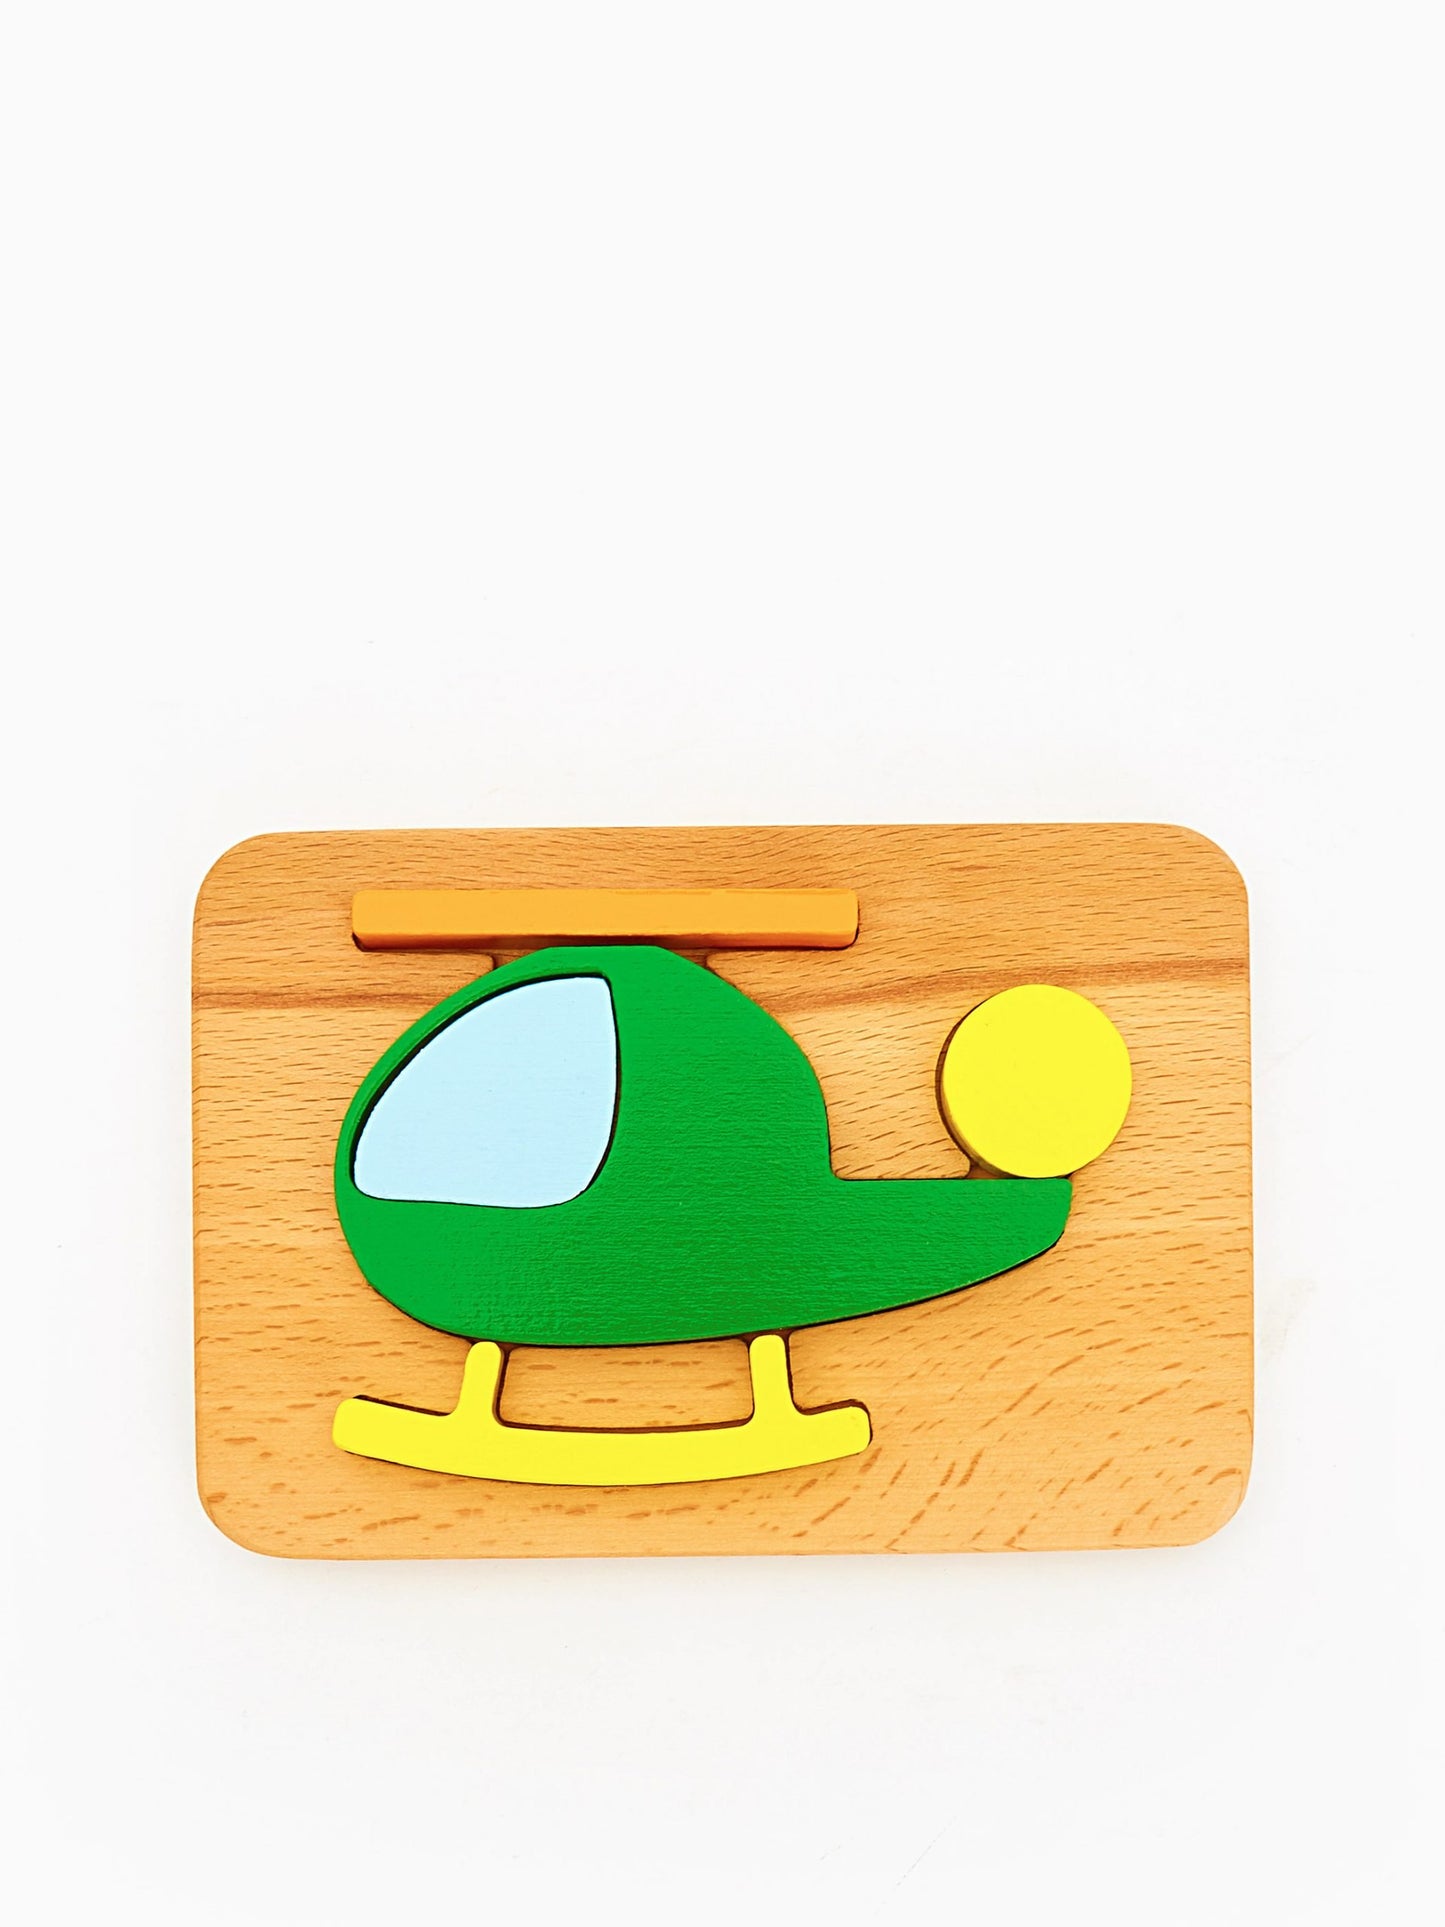 Wood&Joy Vehicles Puzzle and Balance Toy